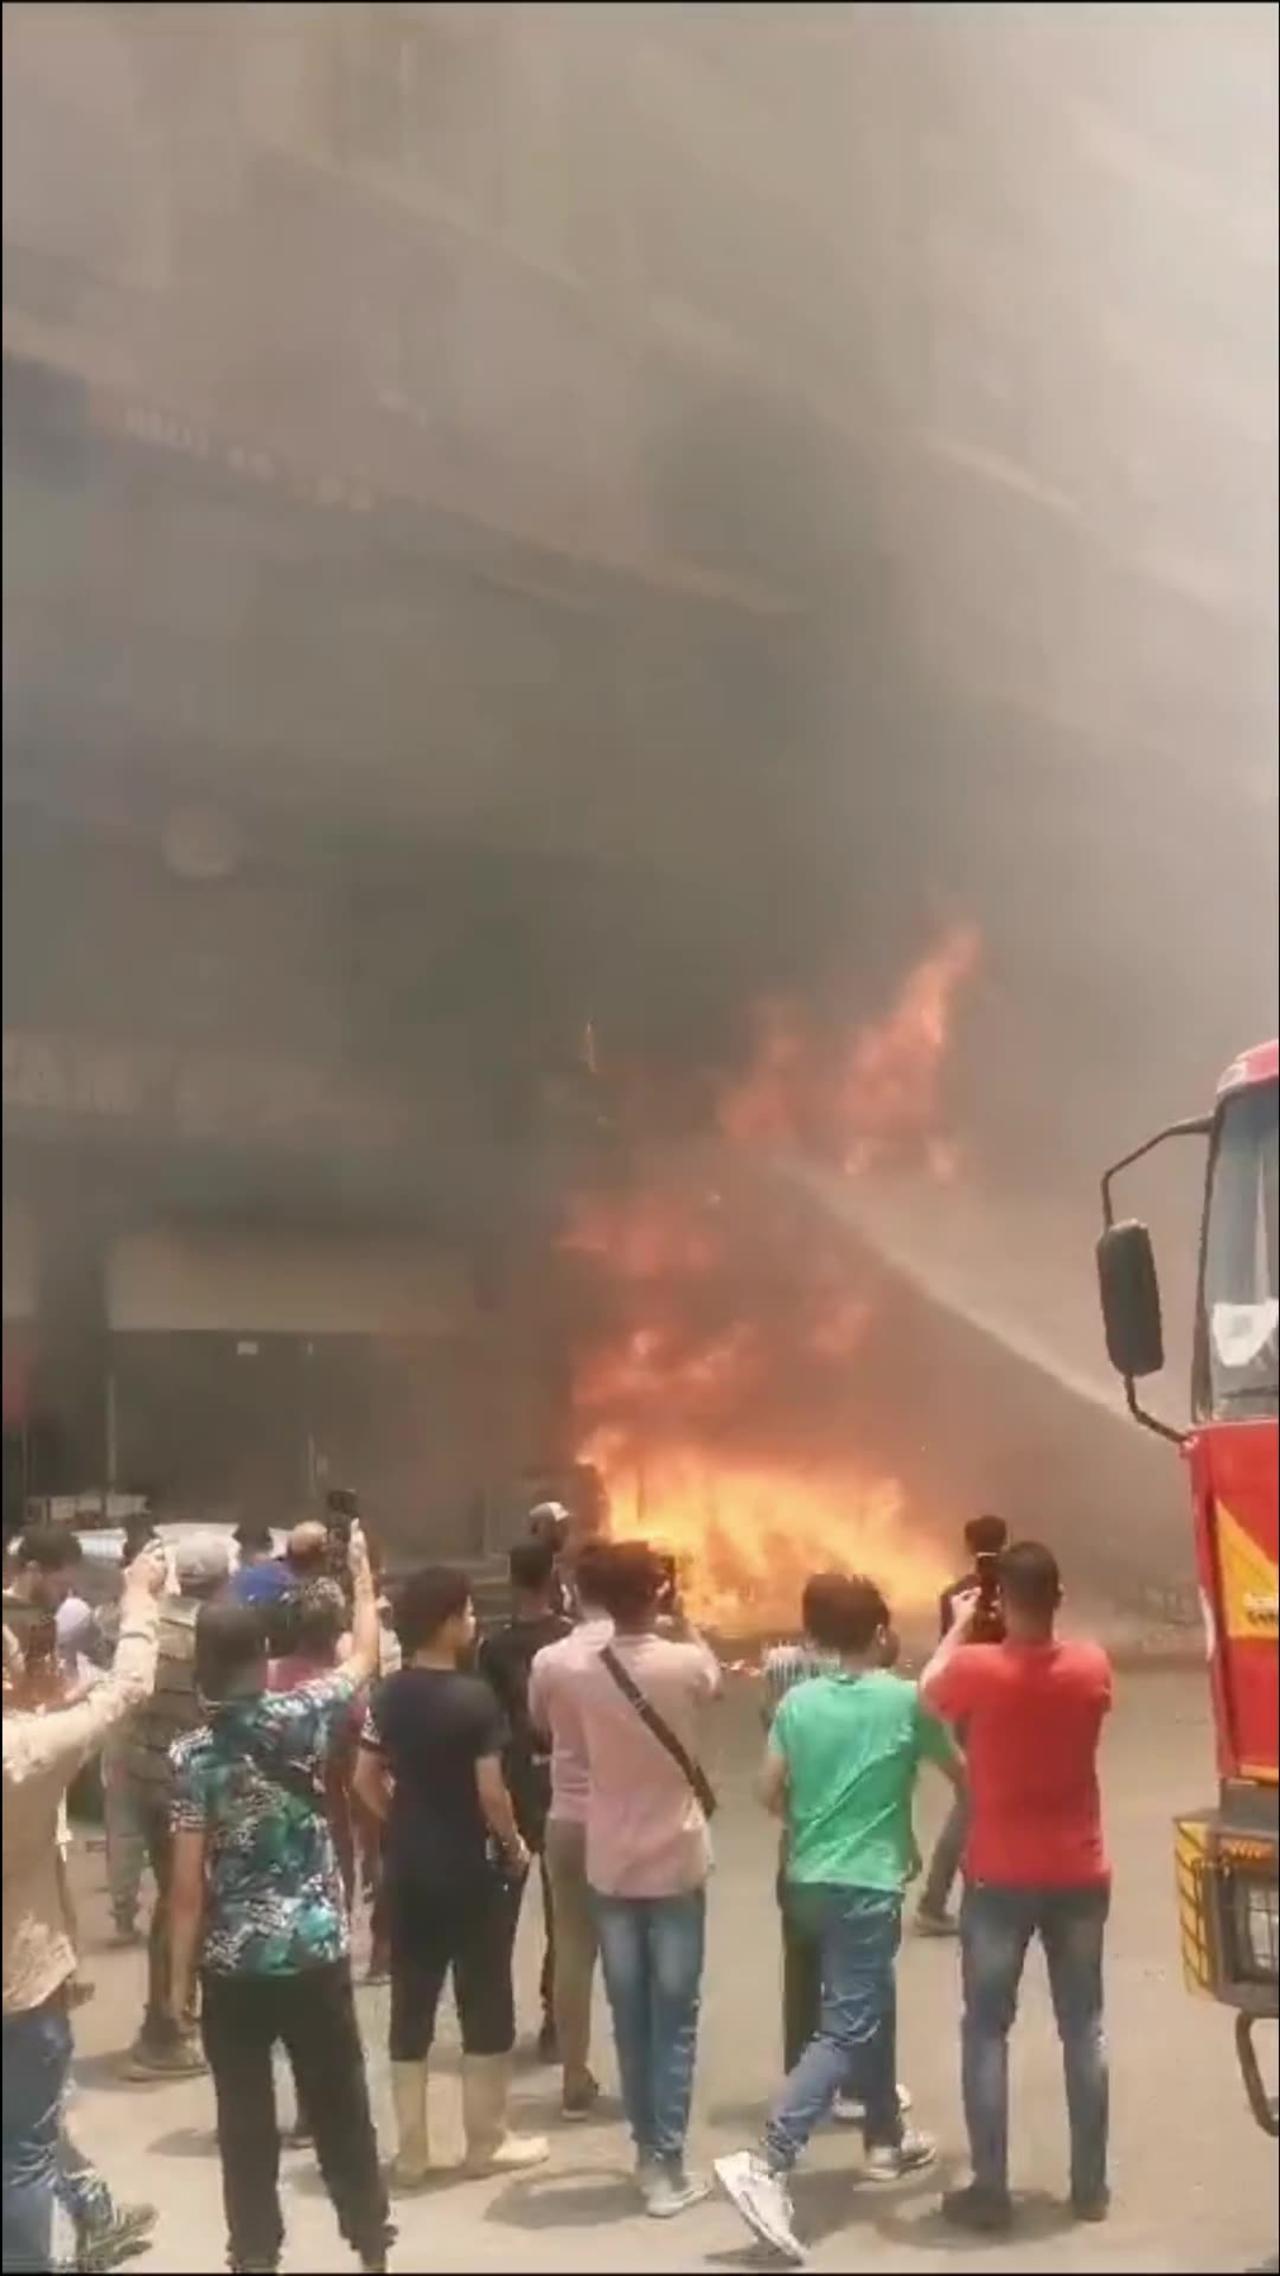 Fire in a street